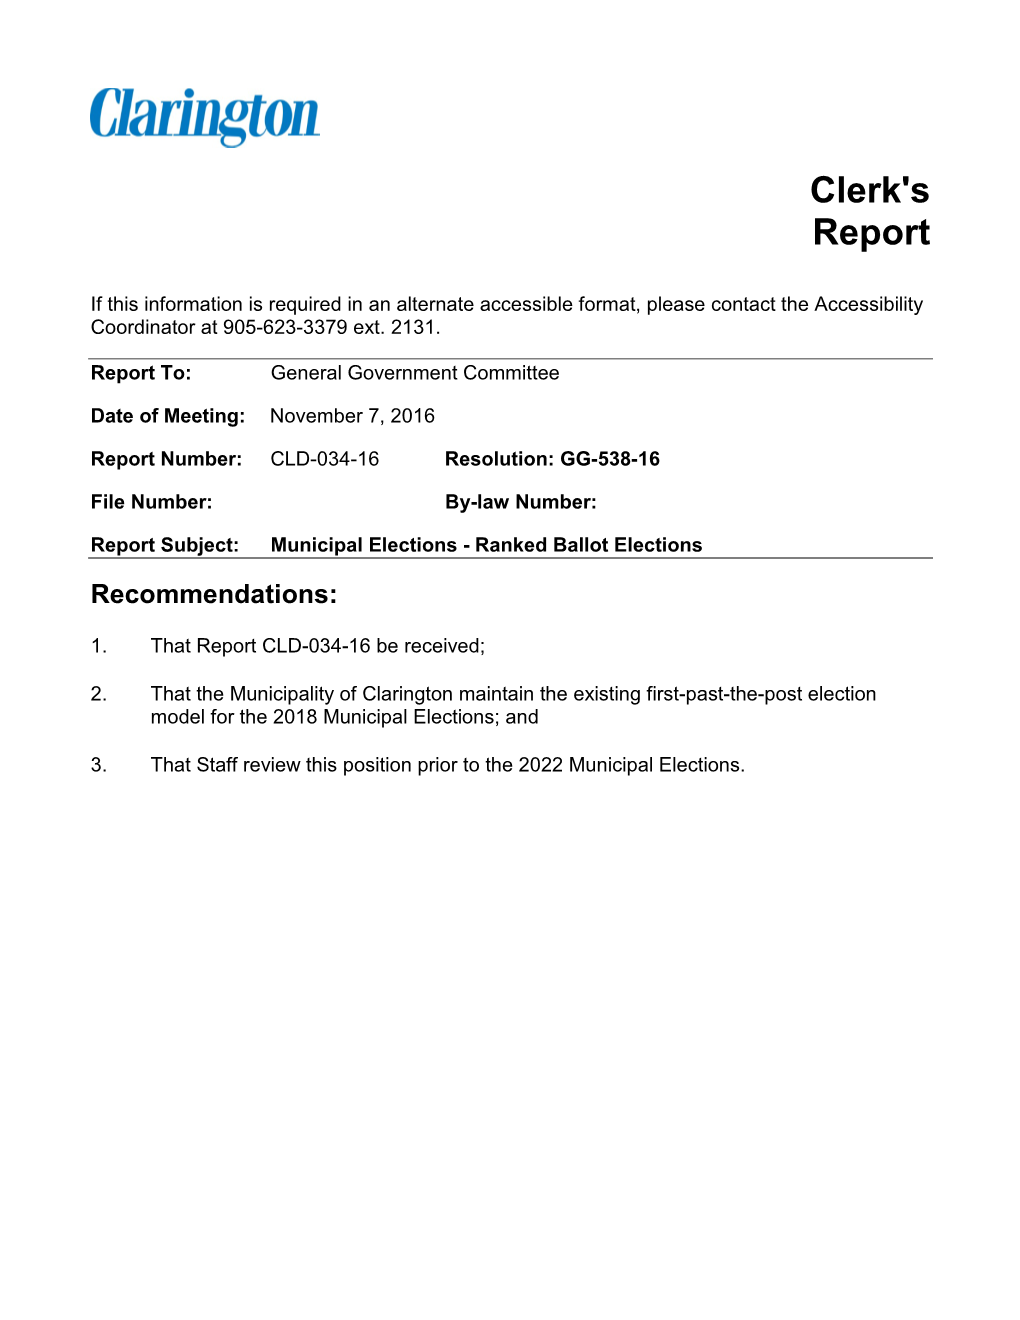 Clerk's Report